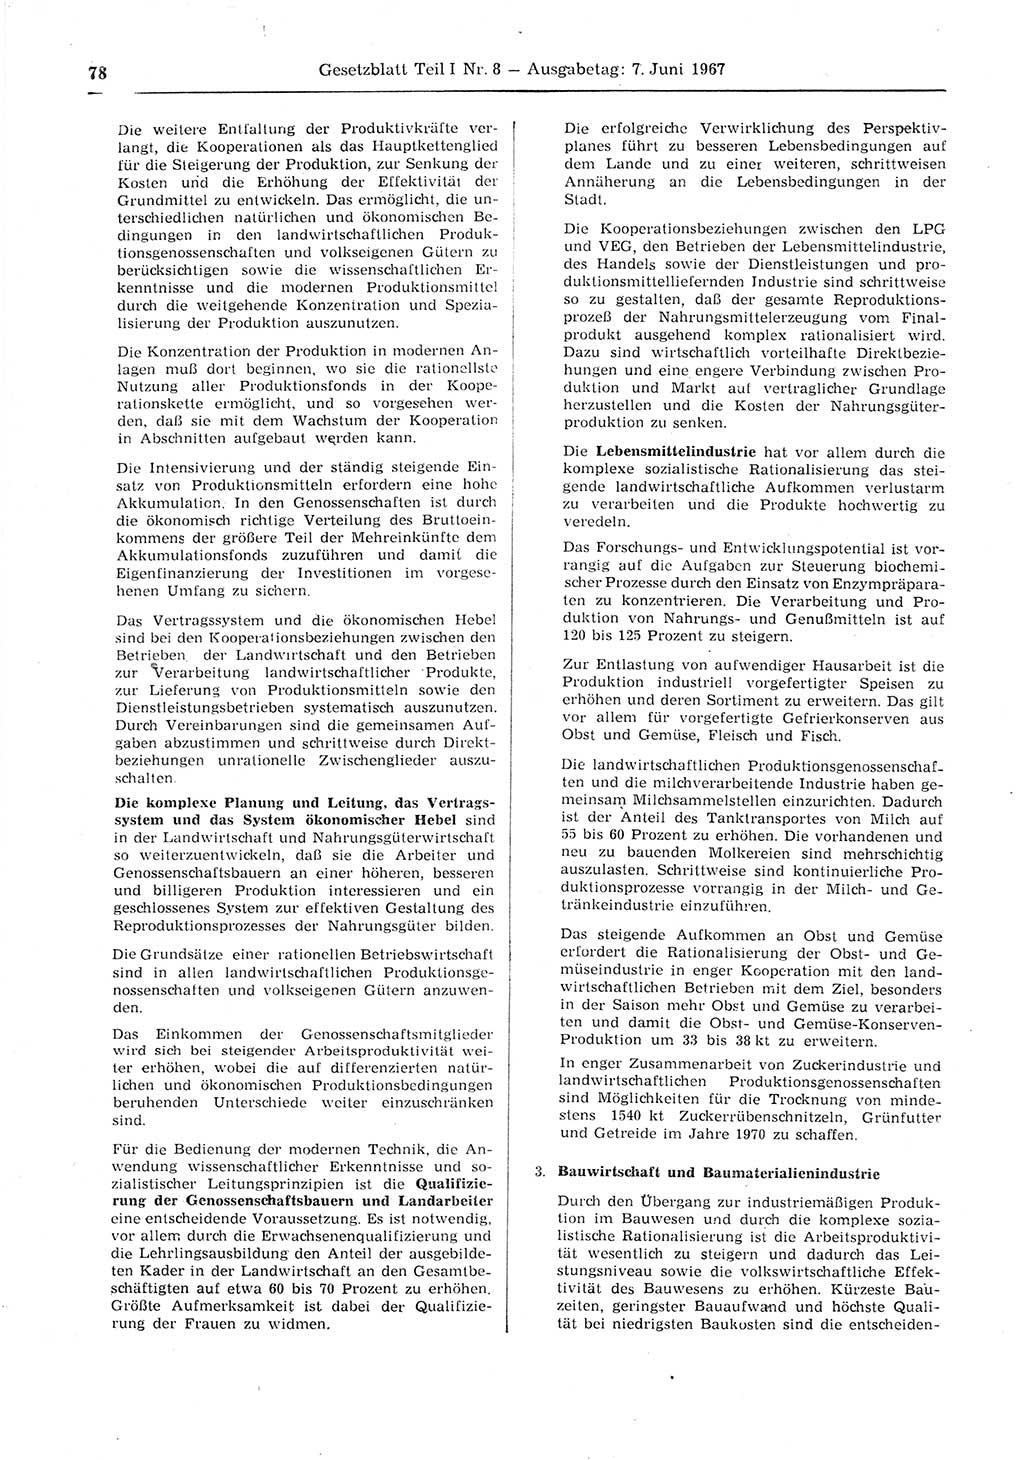 Gesetzblatt (GBl.) der Deutschen Demokratischen Republik (DDR) Teil Ⅰ 1967, Seite 78 (GBl. DDR Ⅰ 1967, S. 78)